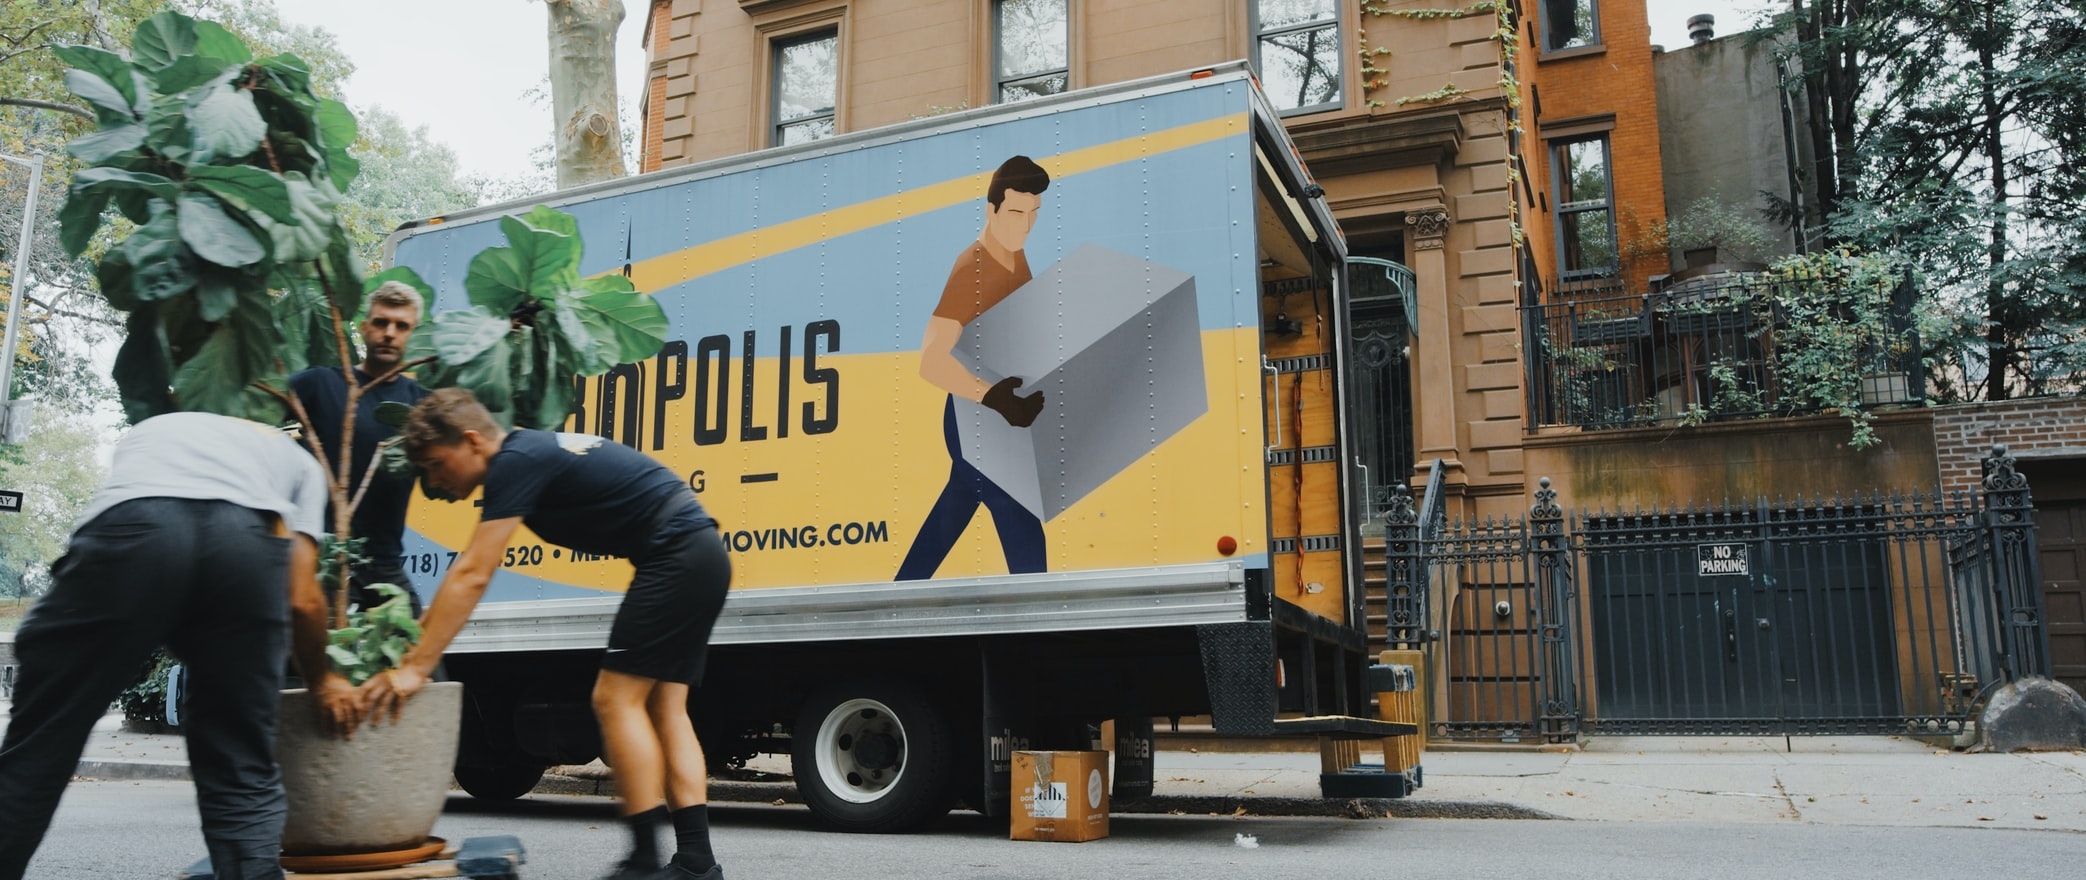 Une entreprise de déménagement dans la rue avec un camion.